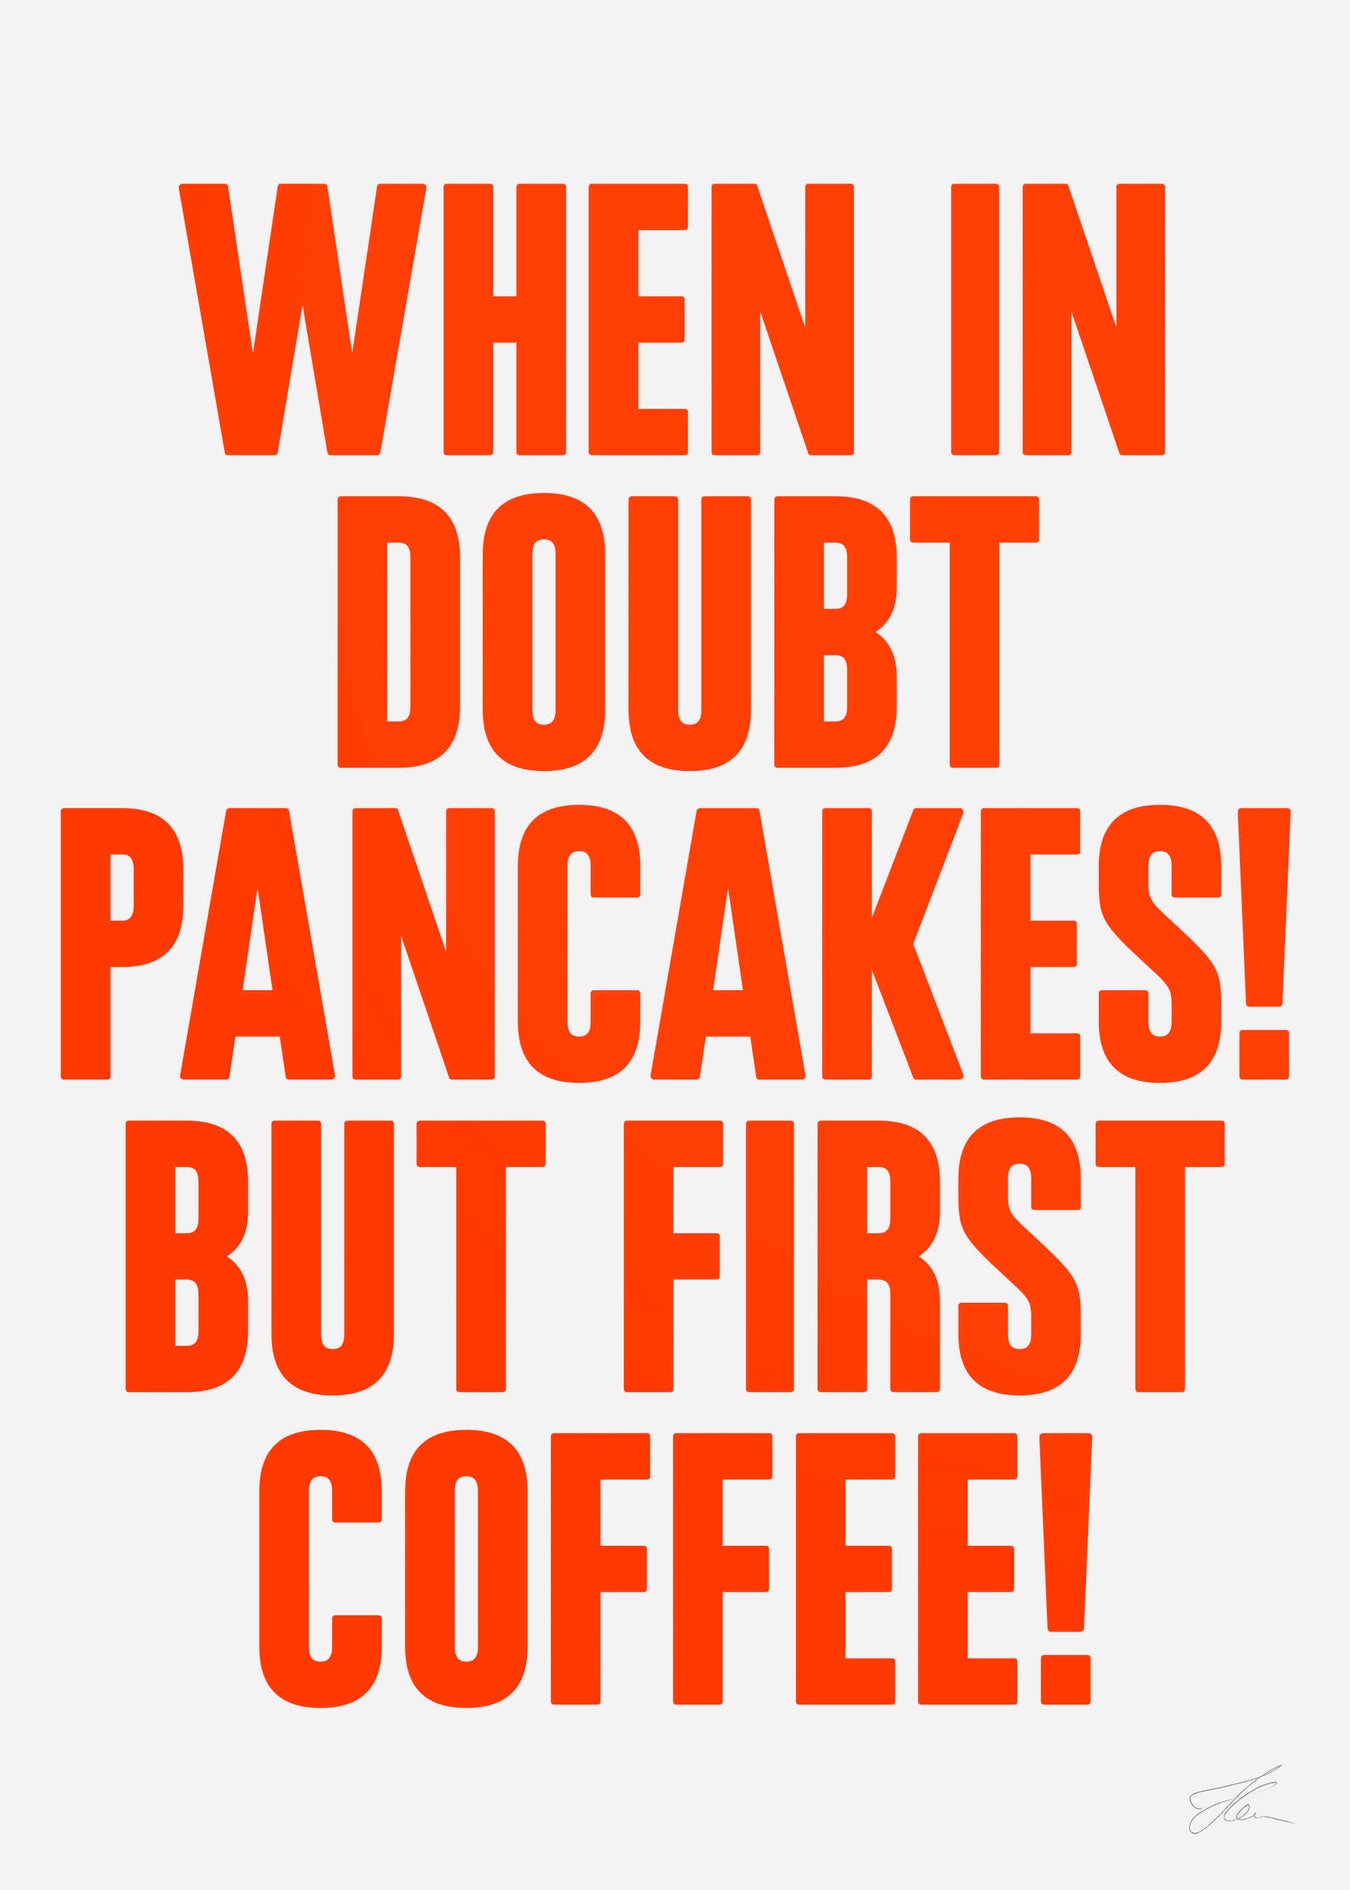 Pancakes & Coffee